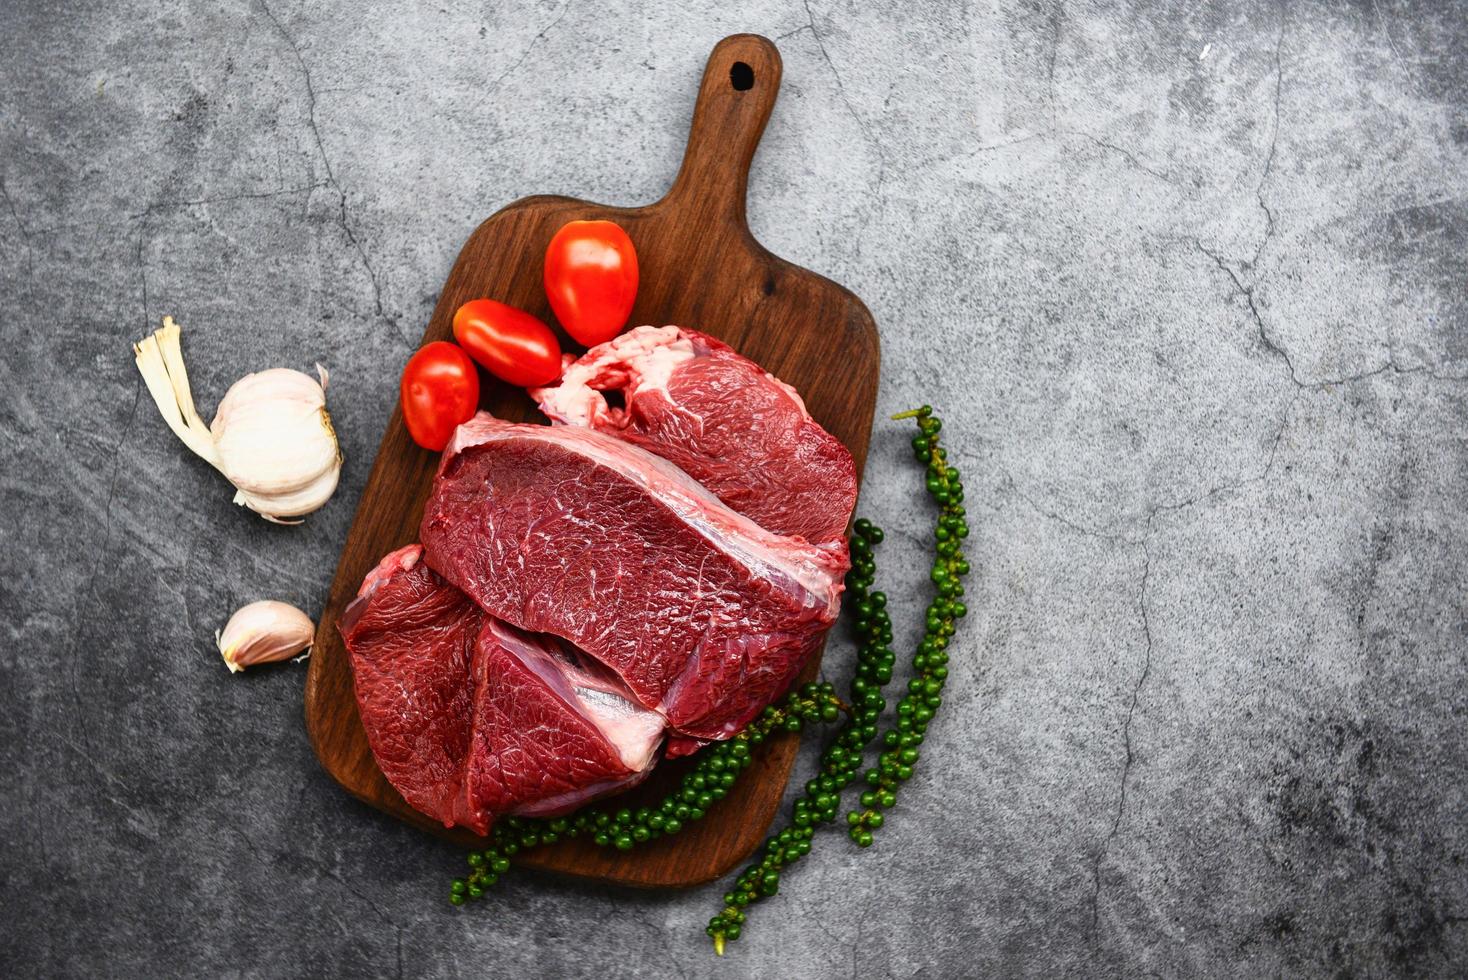 färskt nötkött animaliskt protein - rått nötkött på träskärbräda på köksbordet för att laga nötbiff stekt eller grillad med ingredienser ört och kryddor foto